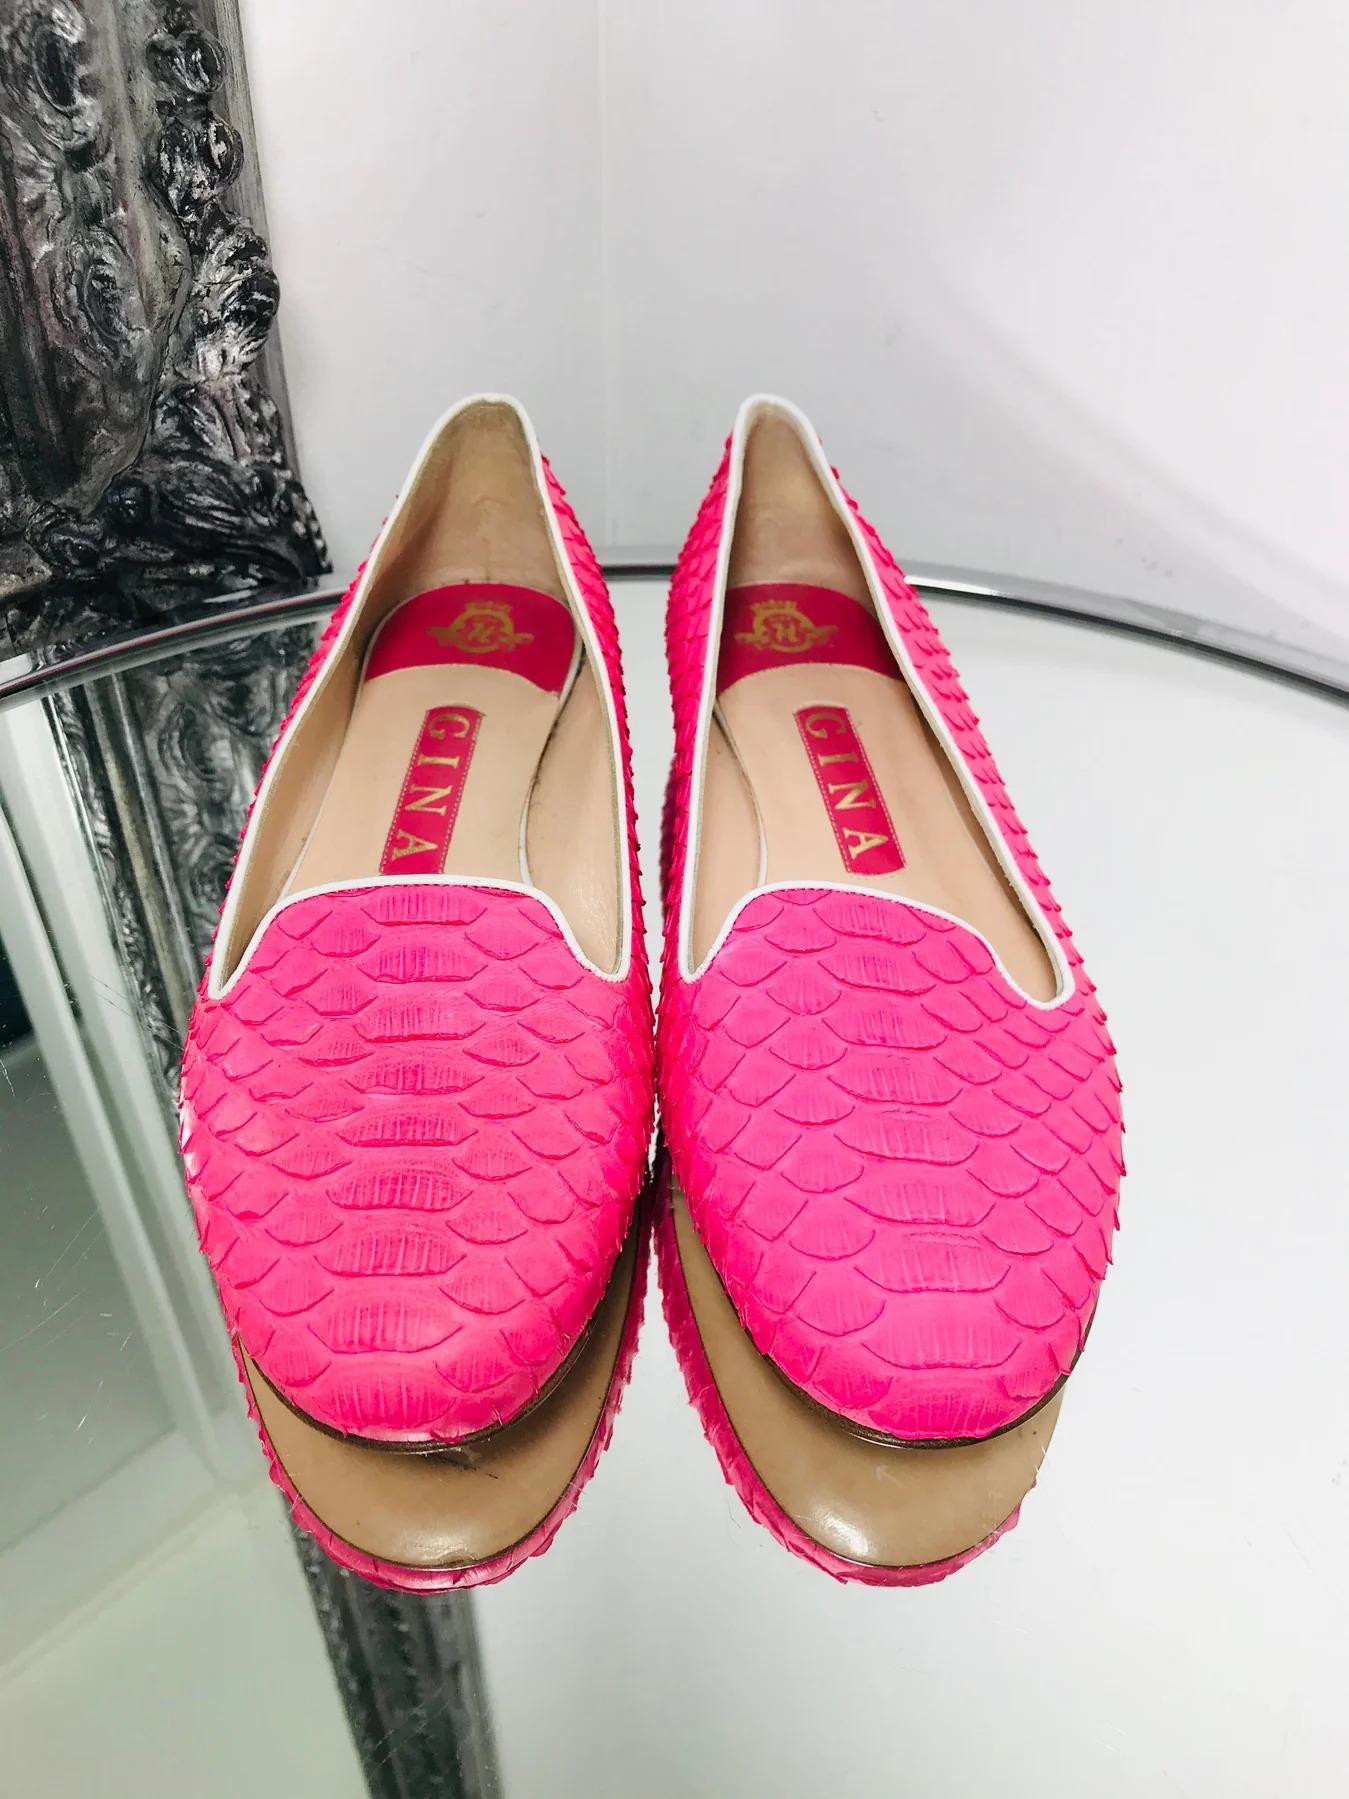 Gina Pythonhaut Flats

Leuchtend rosafarbene flache Schuhe im Ballettstil mit kontrastierendem weißem Rand und mandelförmiger Spitze mit Lederinnensohle.

Zusätzliche Informationen:
Größe - 37
Zusammensetzung - Schlangenhaut 
Zustand - Sehr